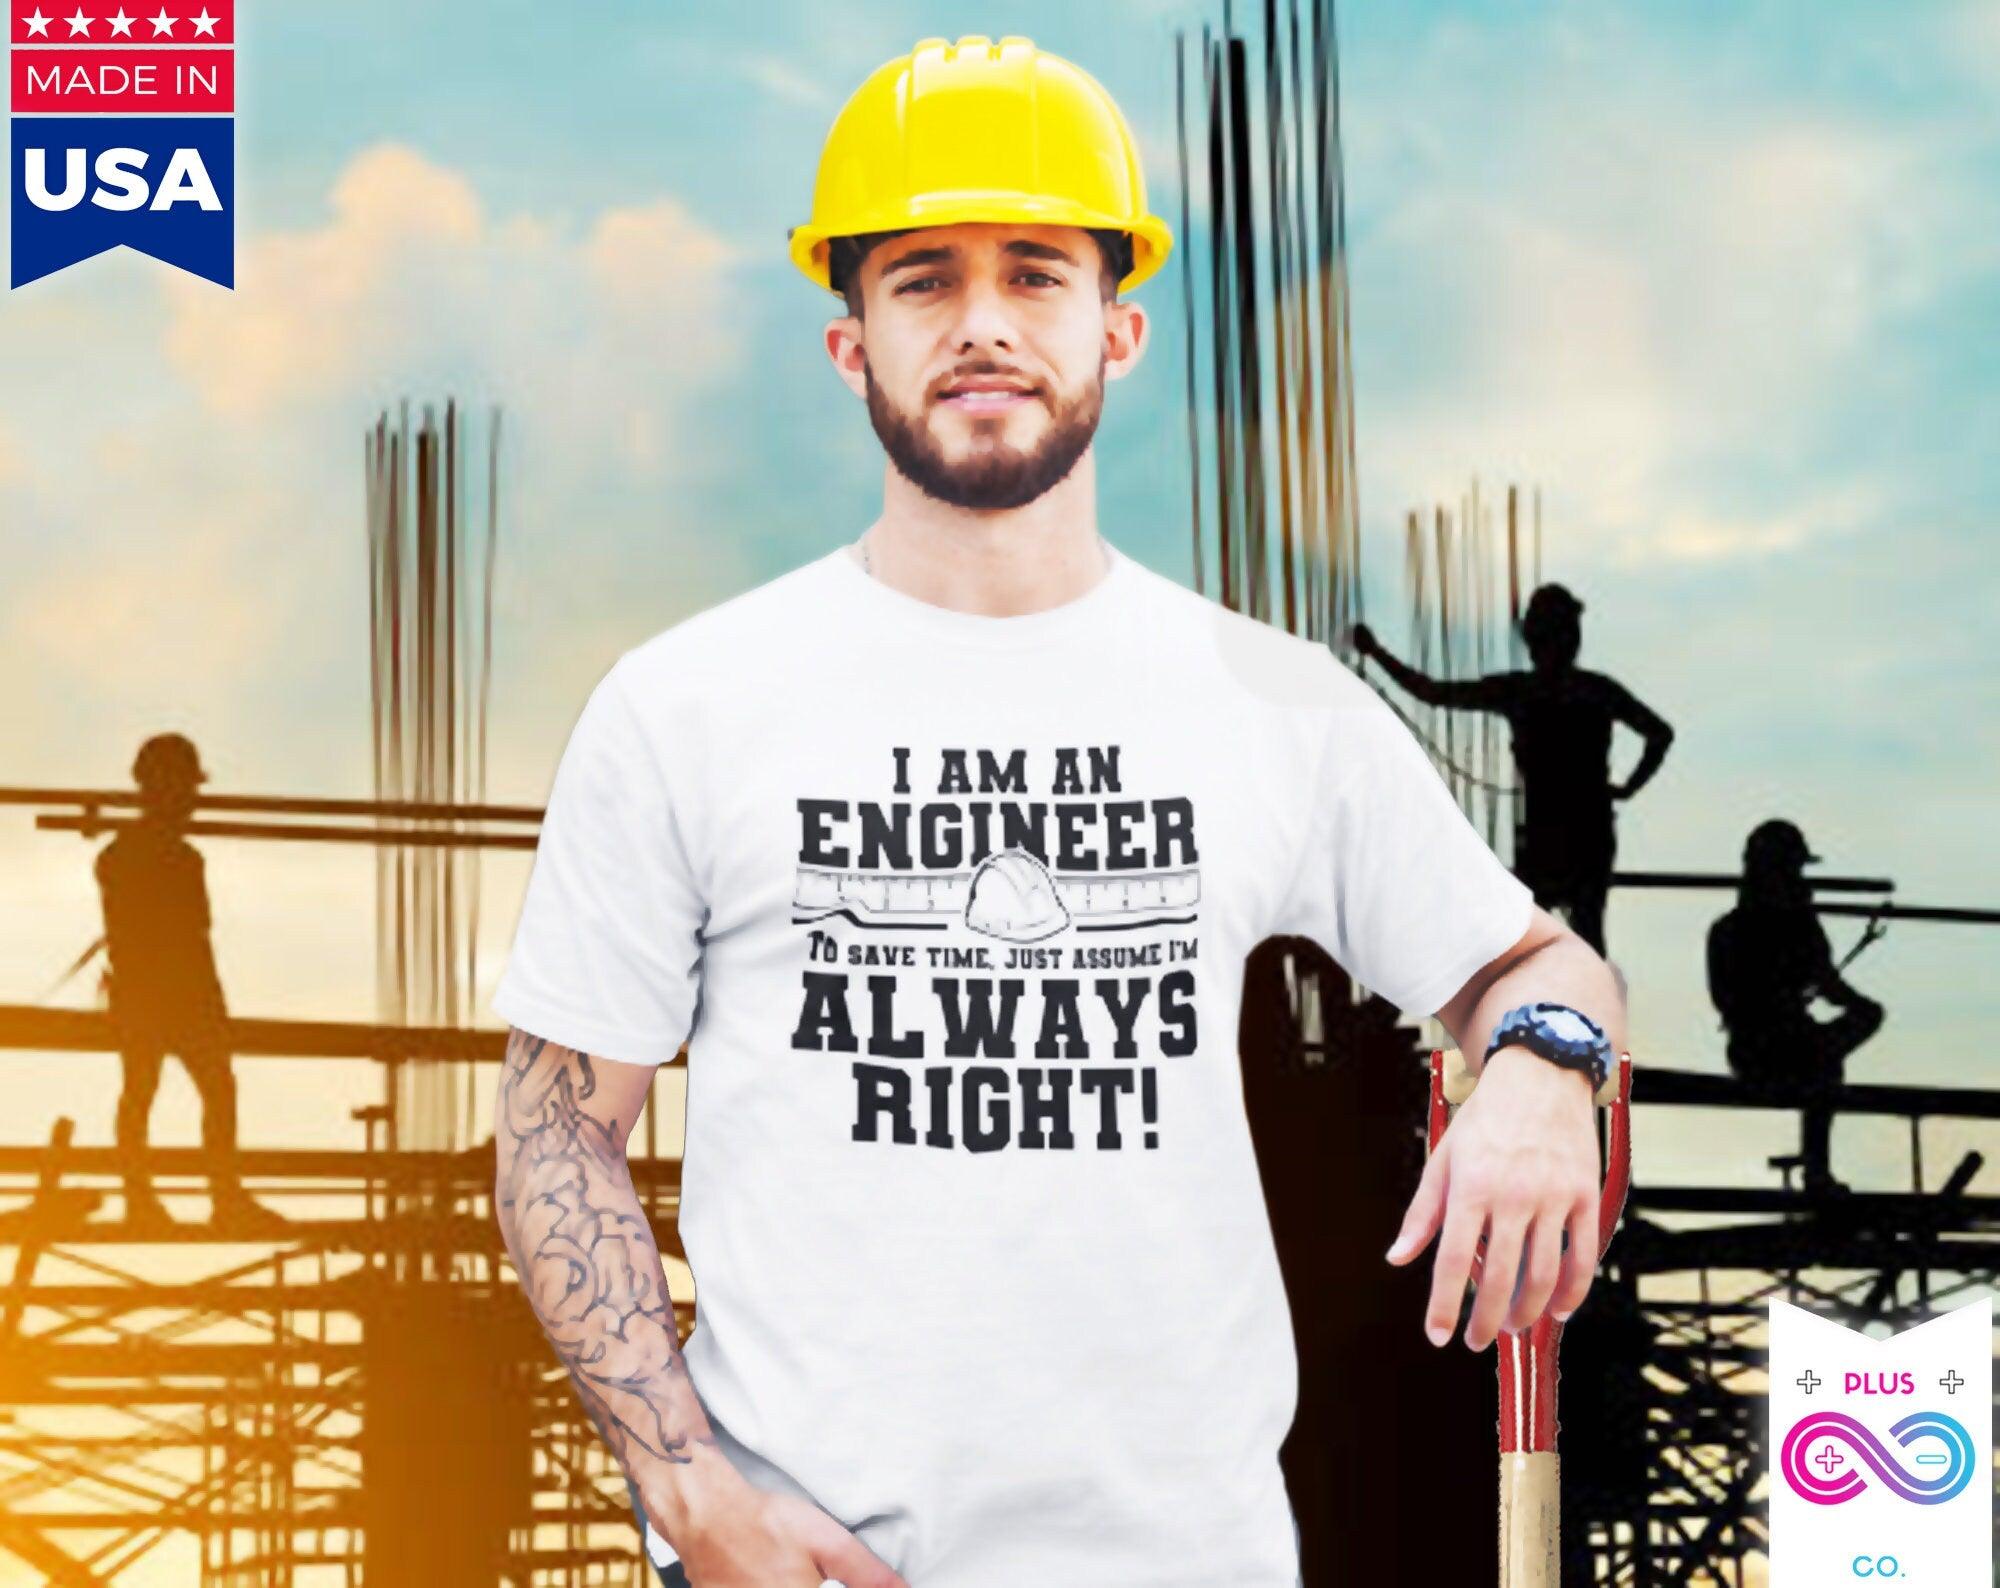 I Am An Engineer Басылған хат 2022 жазы ерлер футболкалары Қысқа жеңді мақта футболка, Инженерлер үшін сыйлық, Инженерлер әрқашан дұрыс футболкалар, футболкалар - plusminusco.com